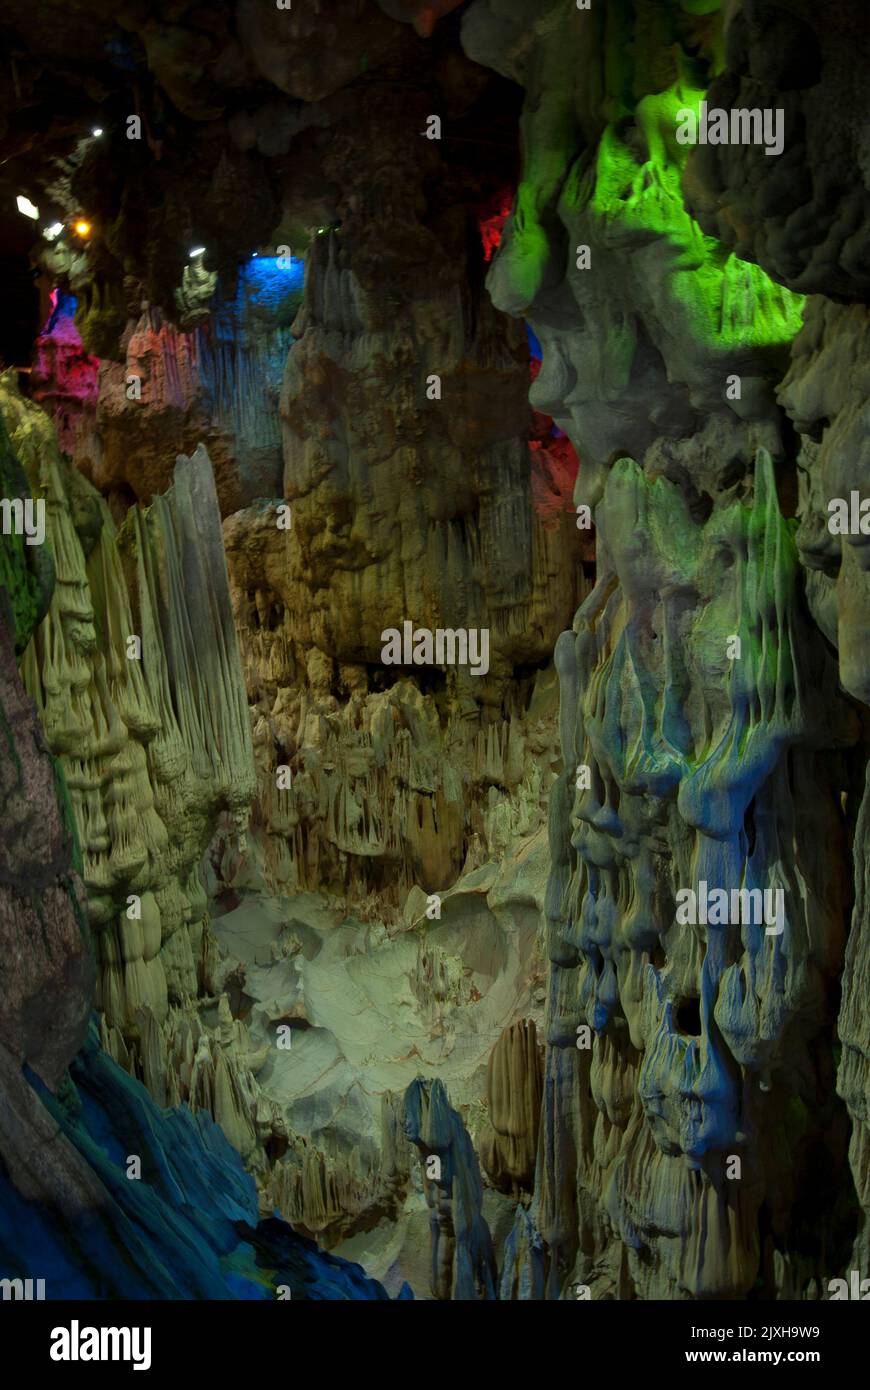 Stalaktitenhöhle, die von farbigen Scheinwerfern auf Hang Dau Go (Wooden Stake Island), einer der vielen Inseln der Halong Bay im Nordosten Vietnams, beleuchtet wird. Stockfoto